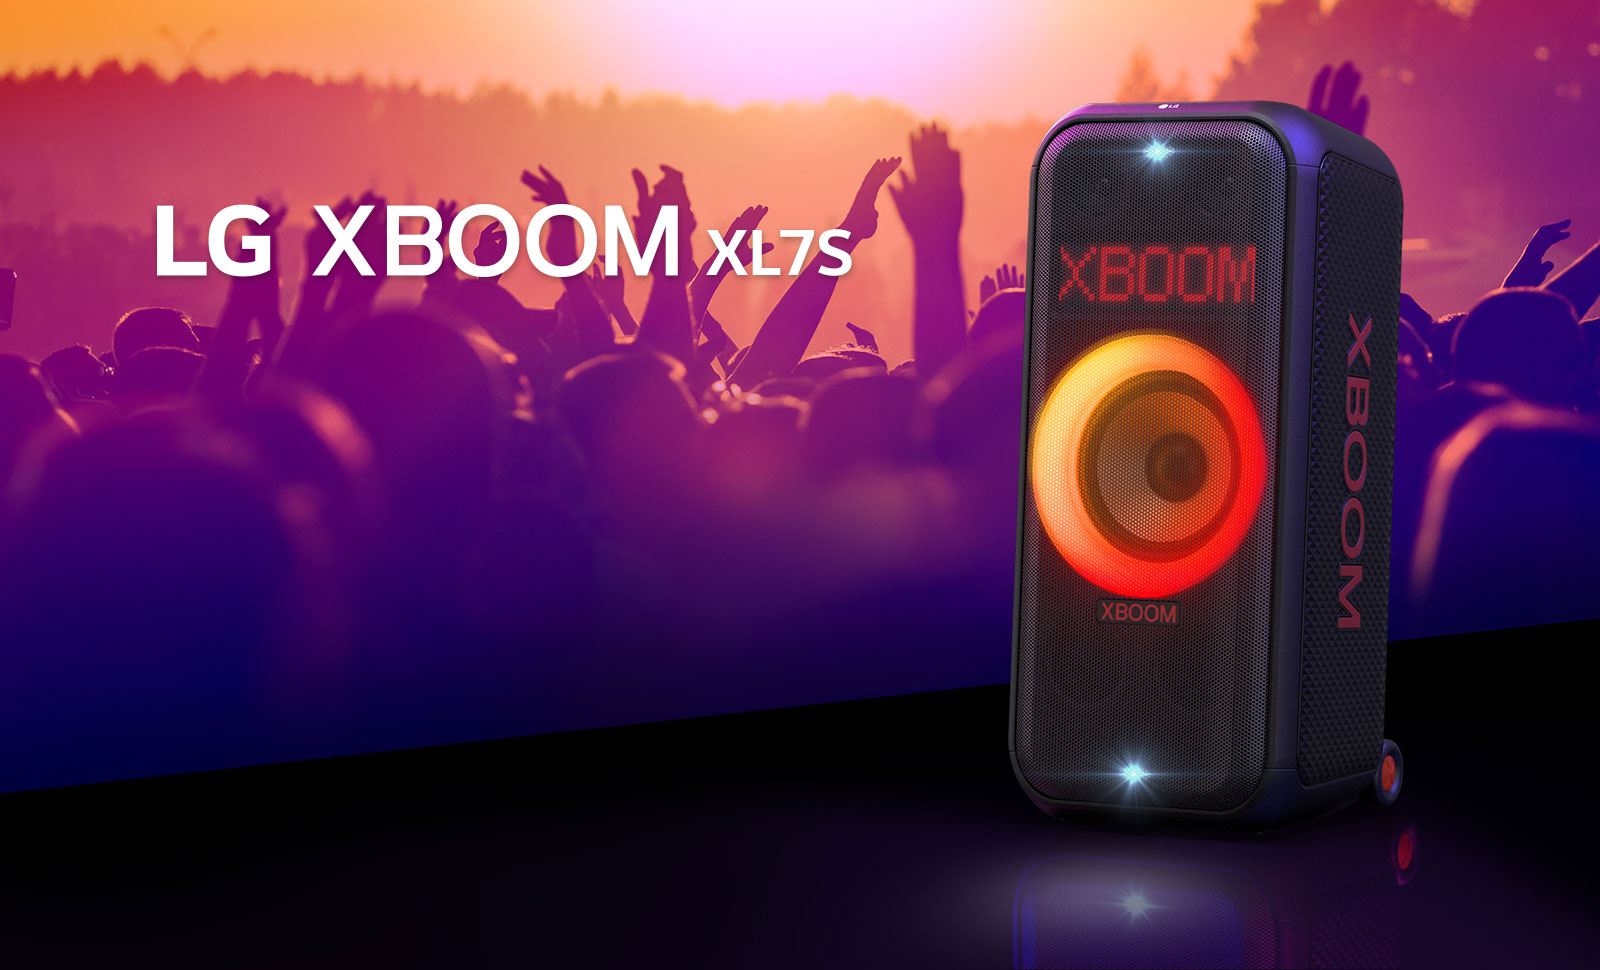 LG XBOOM XL7S está en el escenario con iluminación gradiente de rojo a naranja encendida. Detrás del escenario, la gente disfruta de la música.